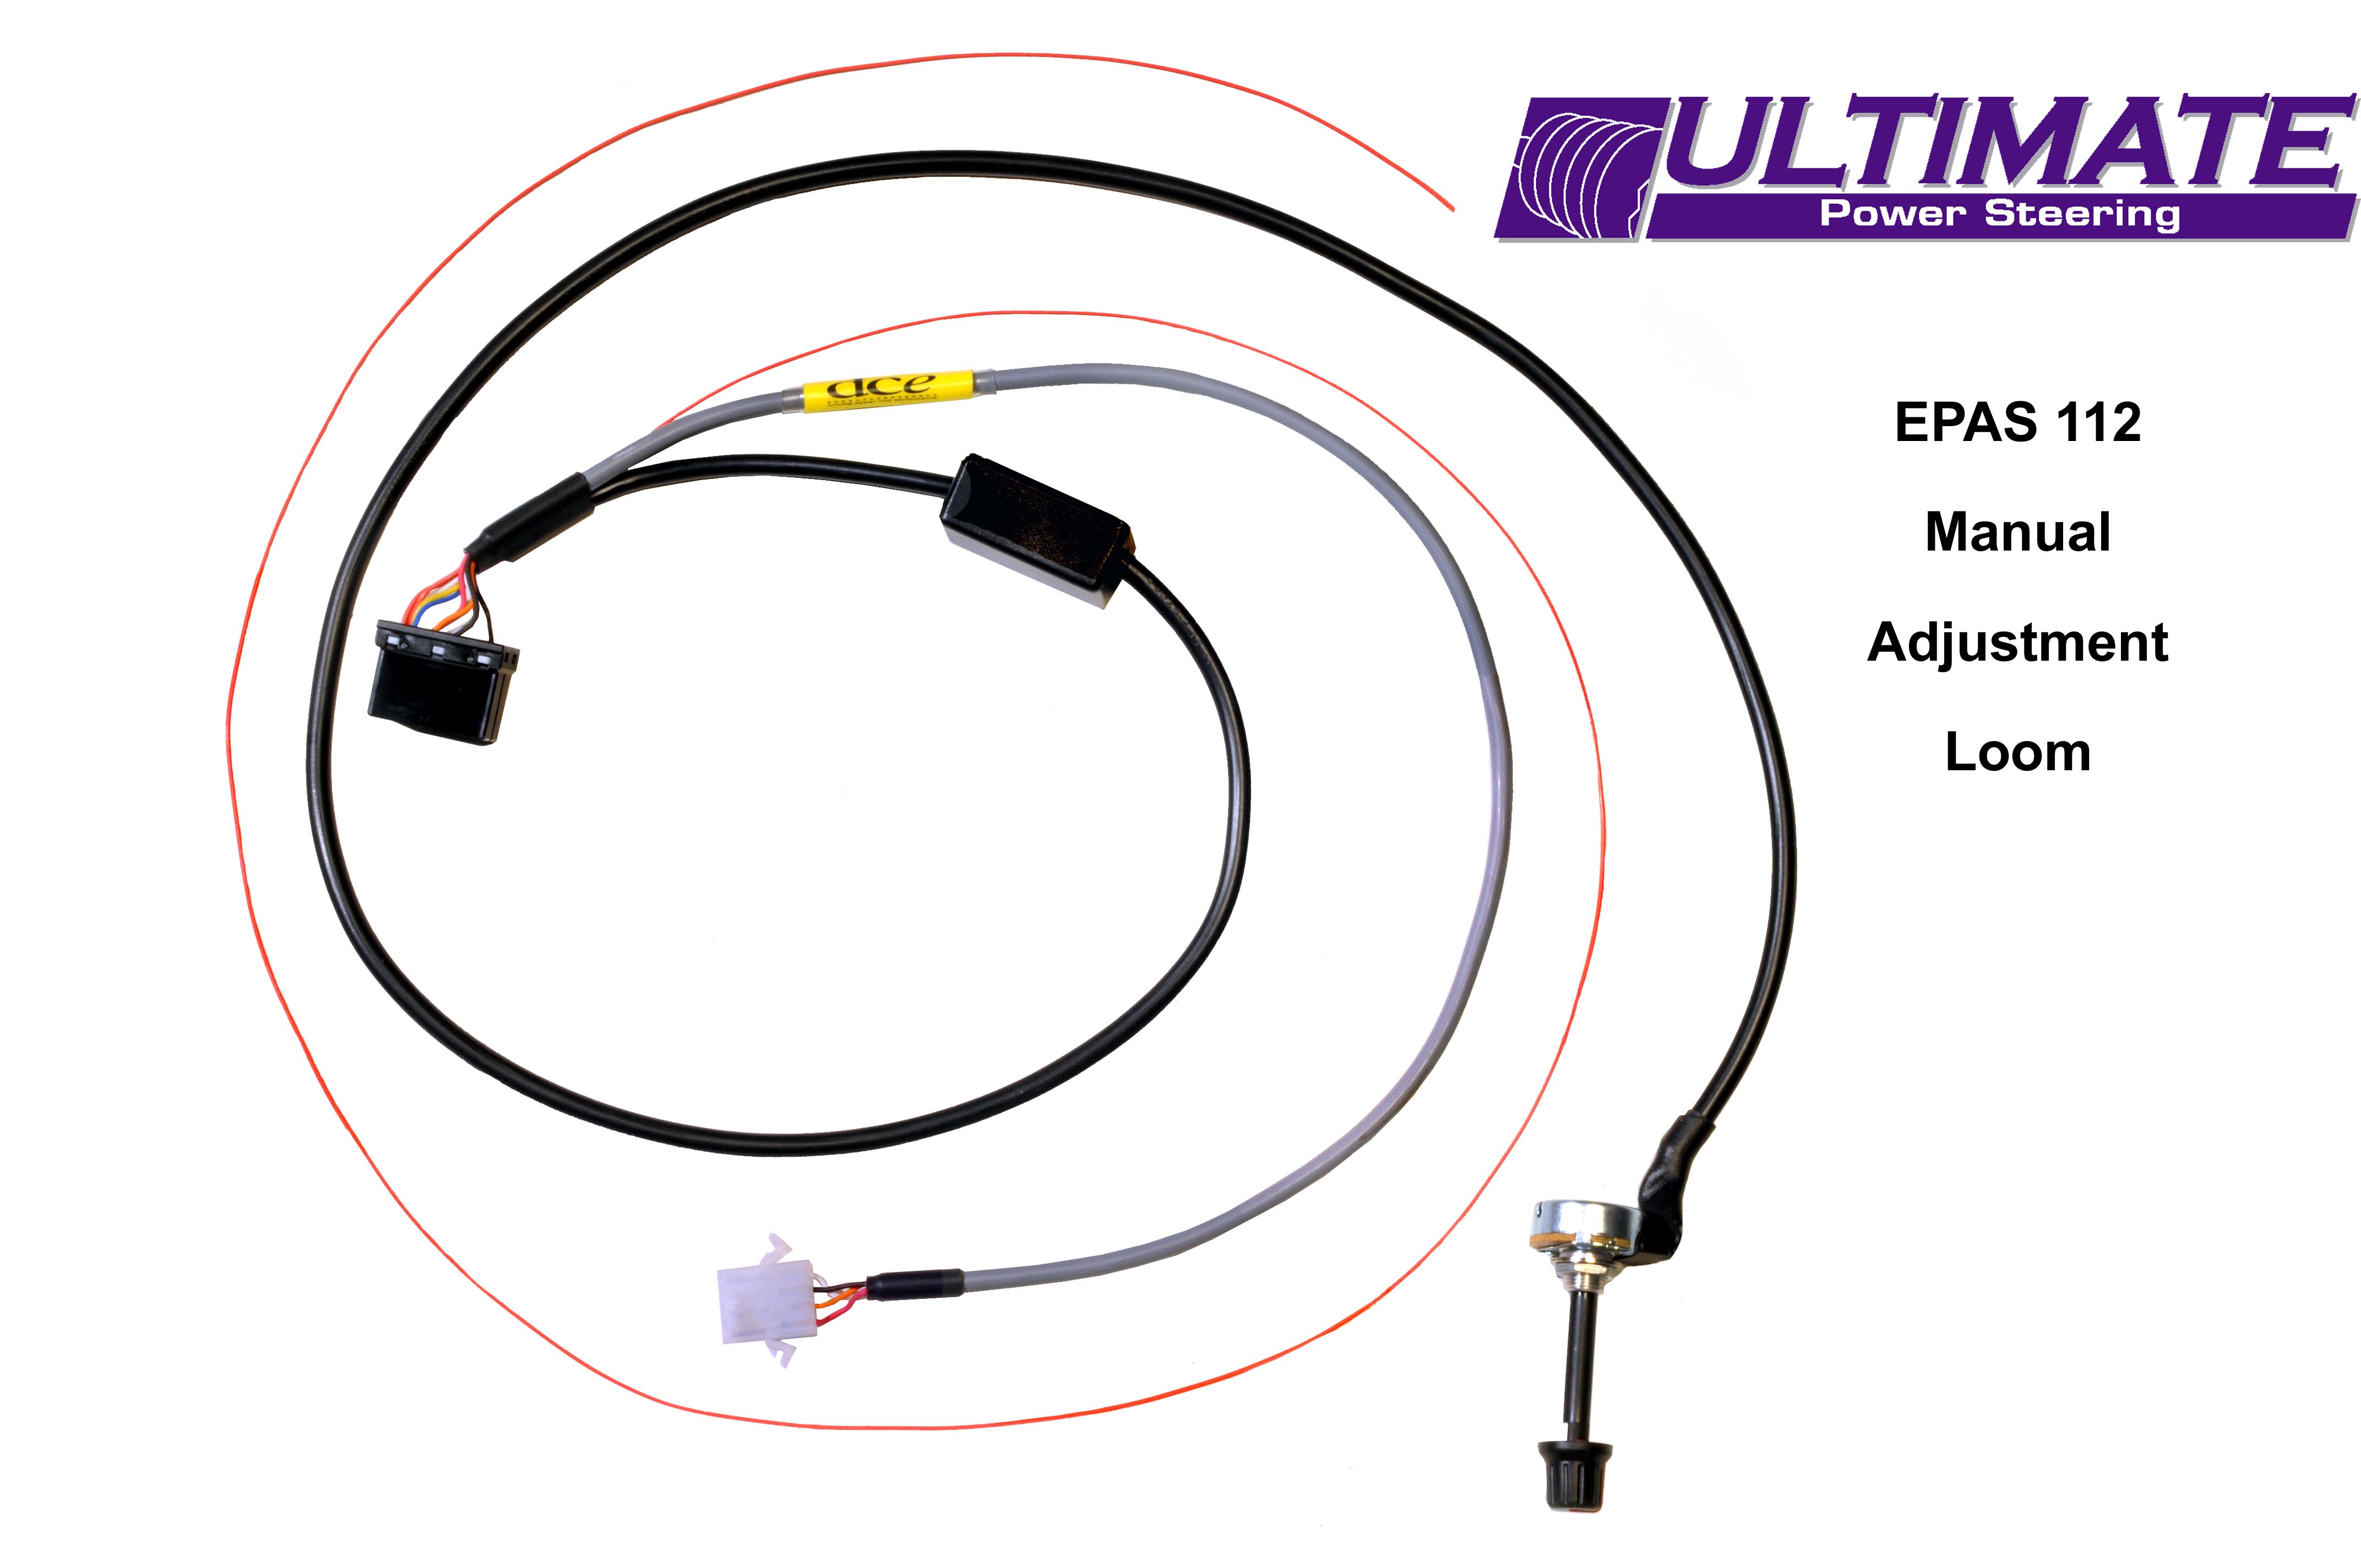 epas112-pro-manual-adjustment-loom-ultimate-power-steering.jpg